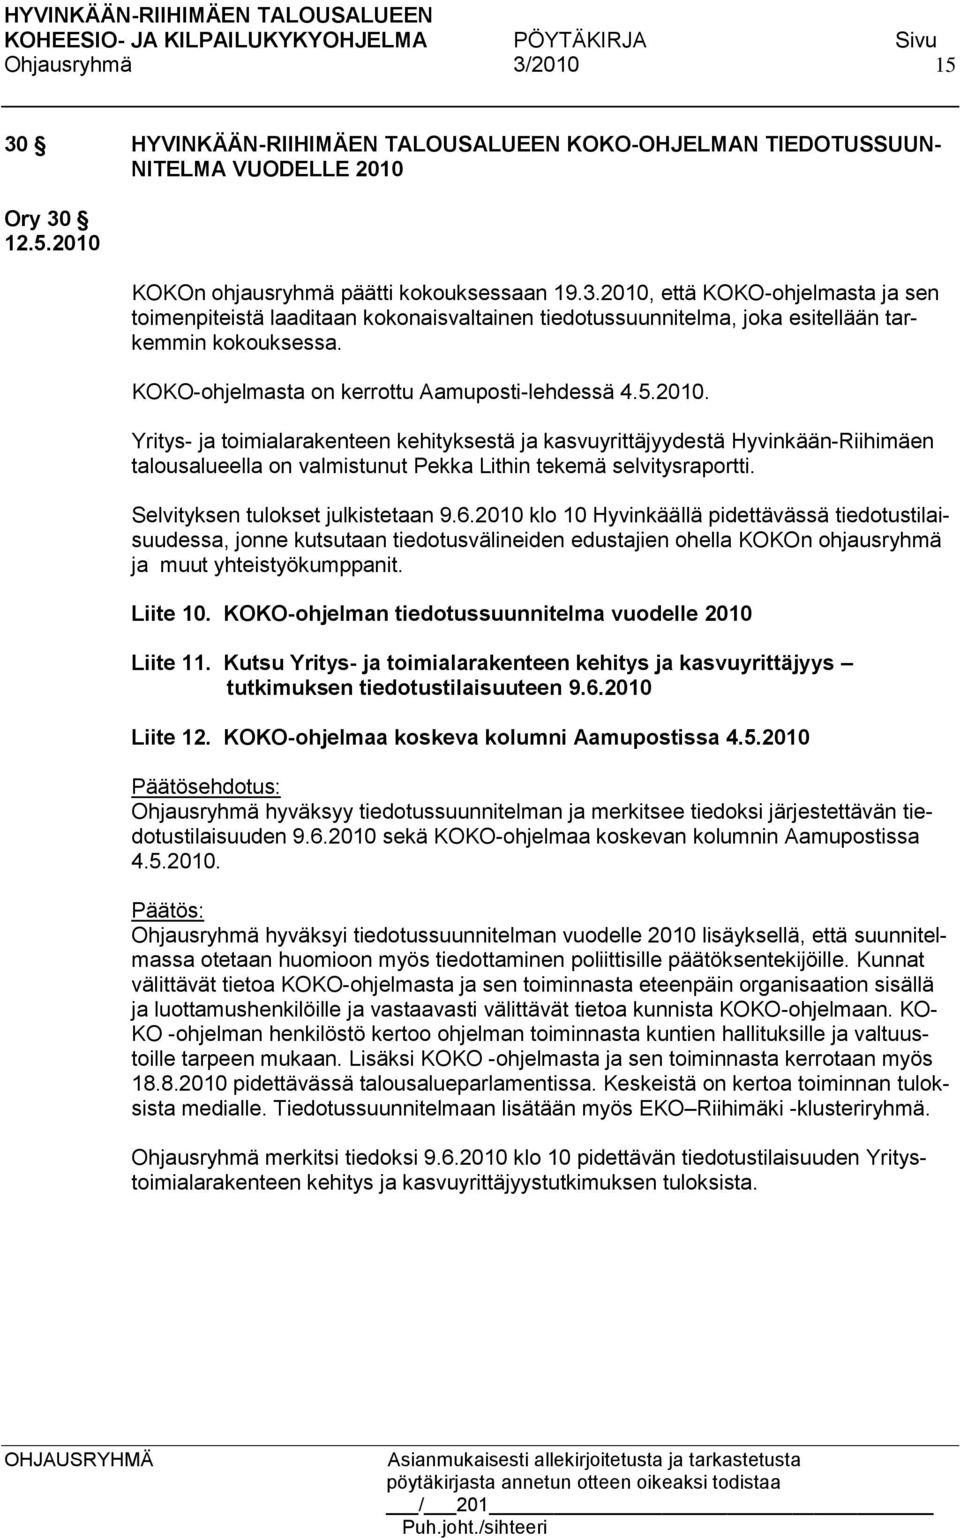 Yritys- ja toimialarakenteen kehityksestä ja kasvuyrittäjyydestä Hyvinkään-Riihimäen talousalueella on valmistunut Pekka Lithin tekemä selvitysraportti. Selvityksen tulokset julkistetaan 9.6.